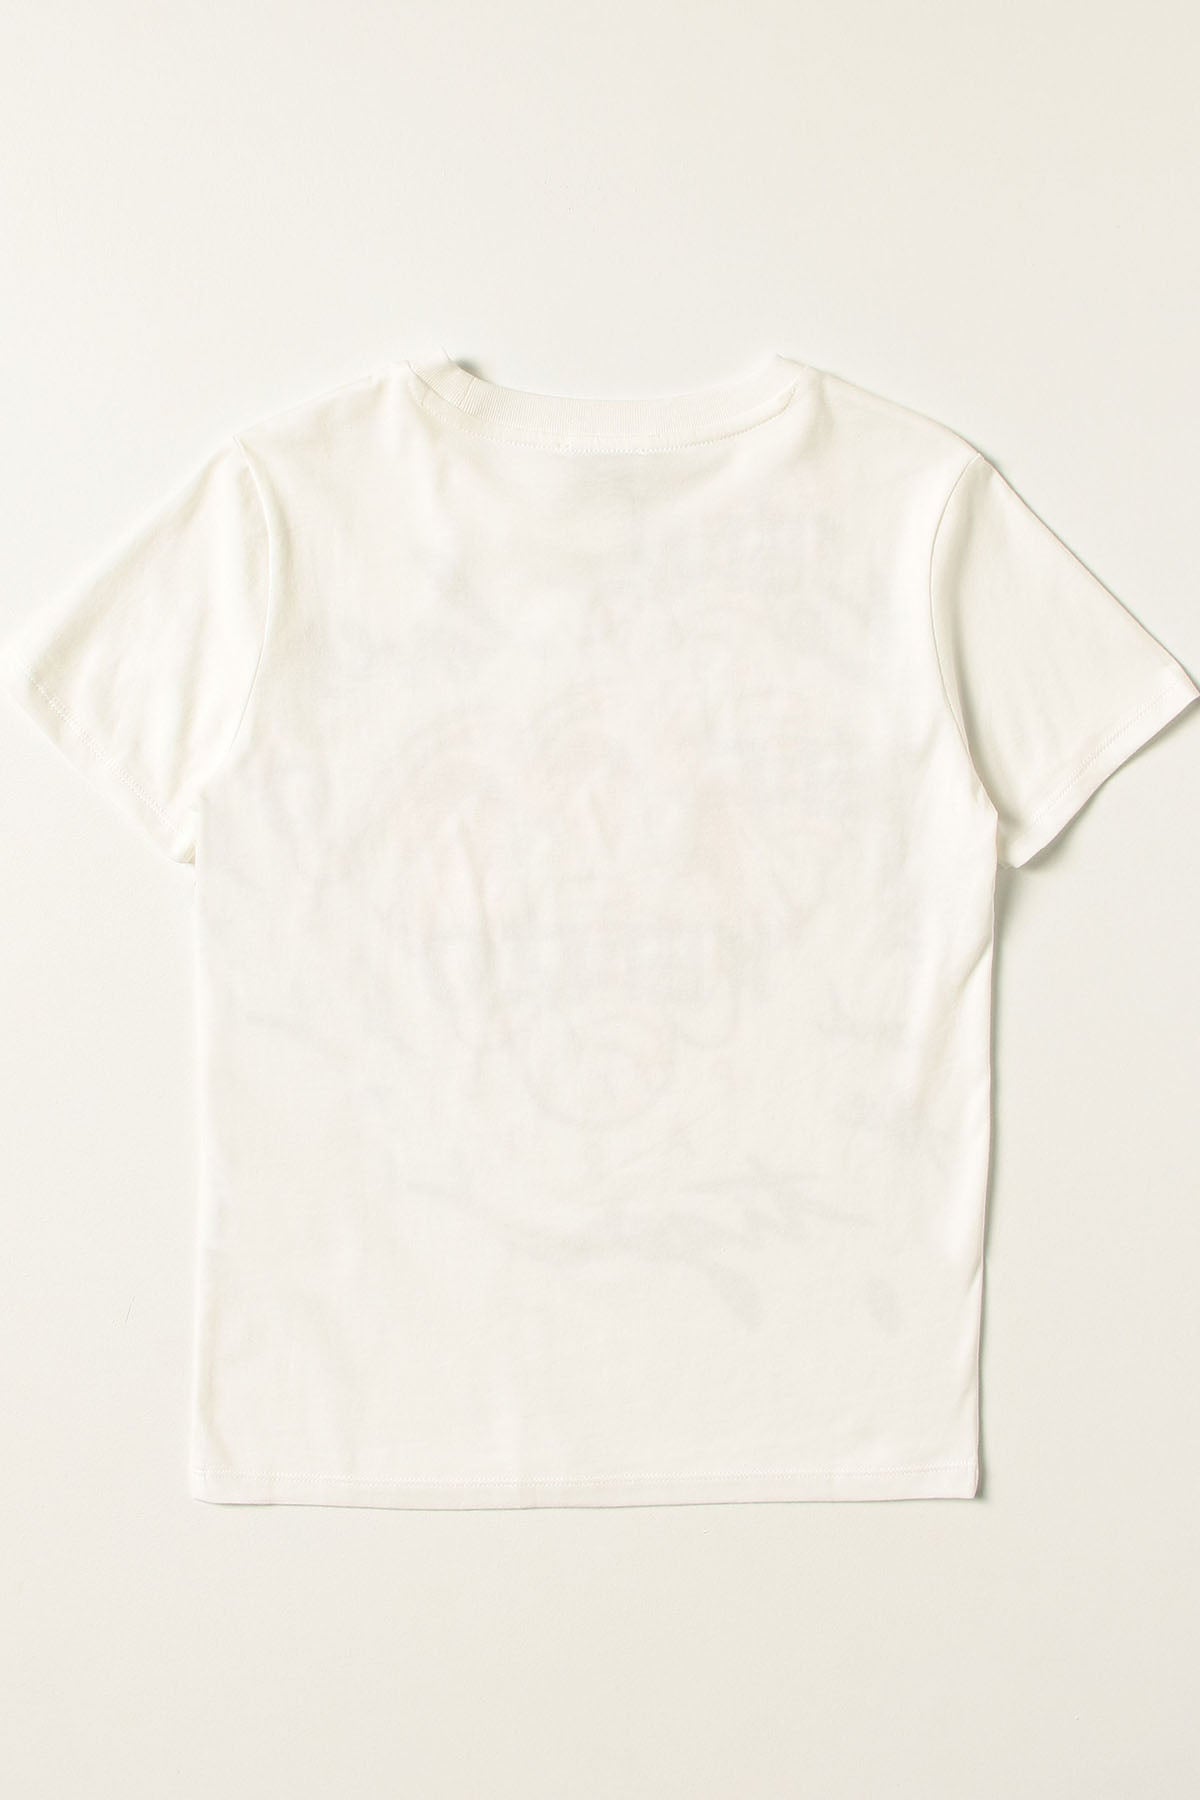 Kenzo Kids 5 Yaş Erkek Çocuk Fil Logolu T-shirt-Libas Trendy Fashion Store